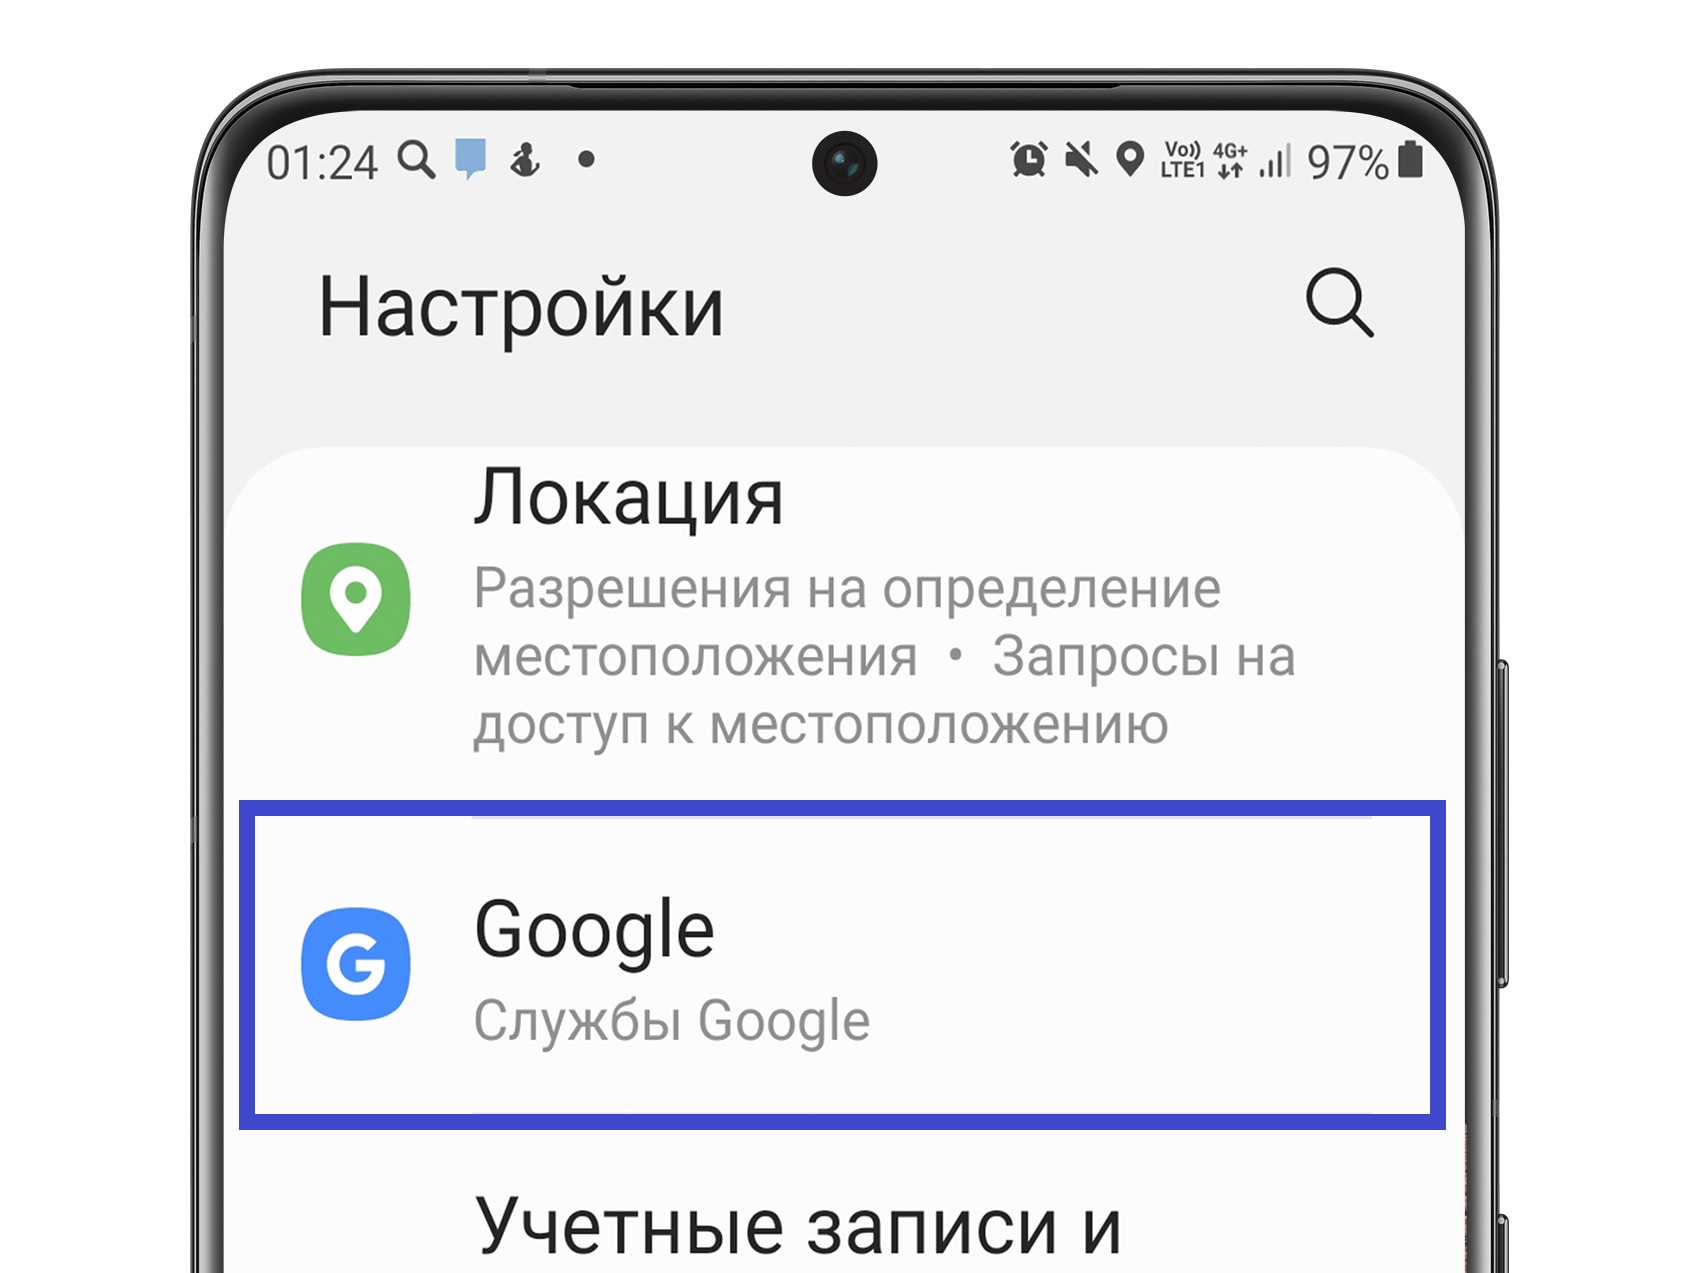 Как слушать песни ВКонтакте на iPhone без интернета, в оффлайн режиме